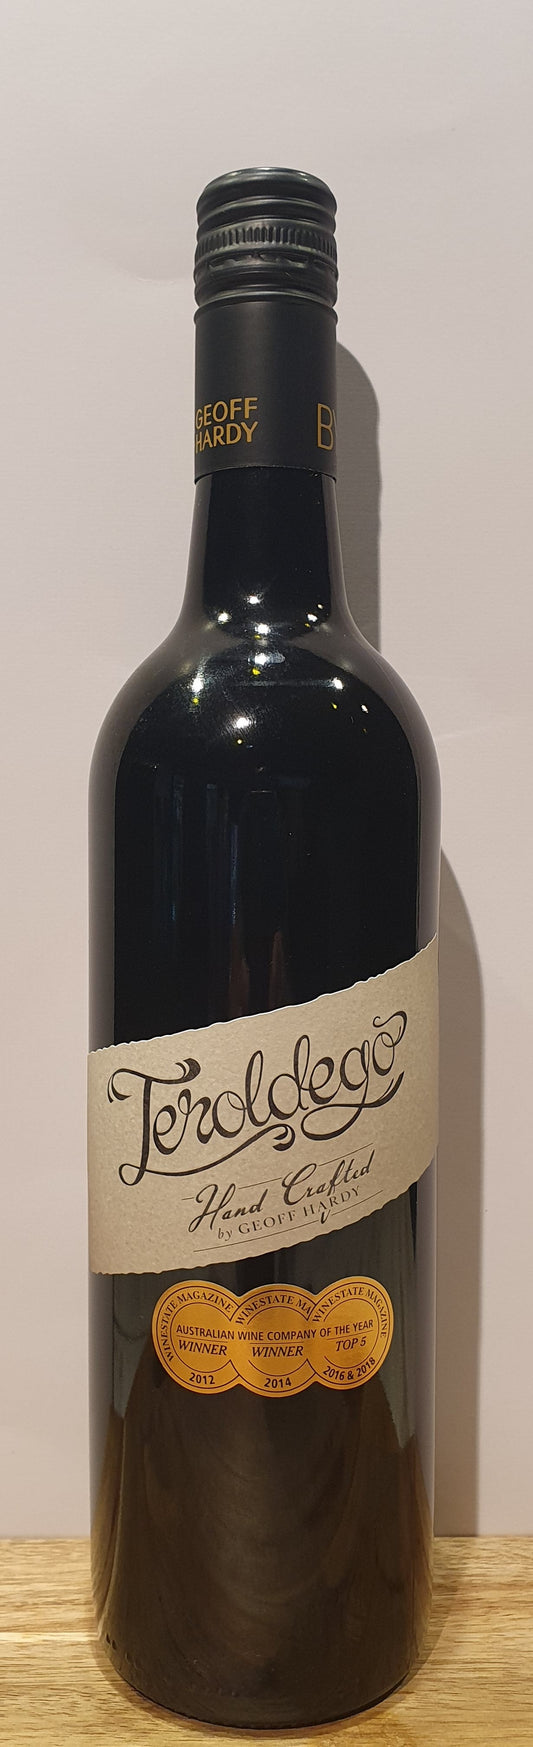 Teroldego 2019 - Premium Red wine from San Telmo Cellars - Just $31.80! Shop now at San Telmo Cellars